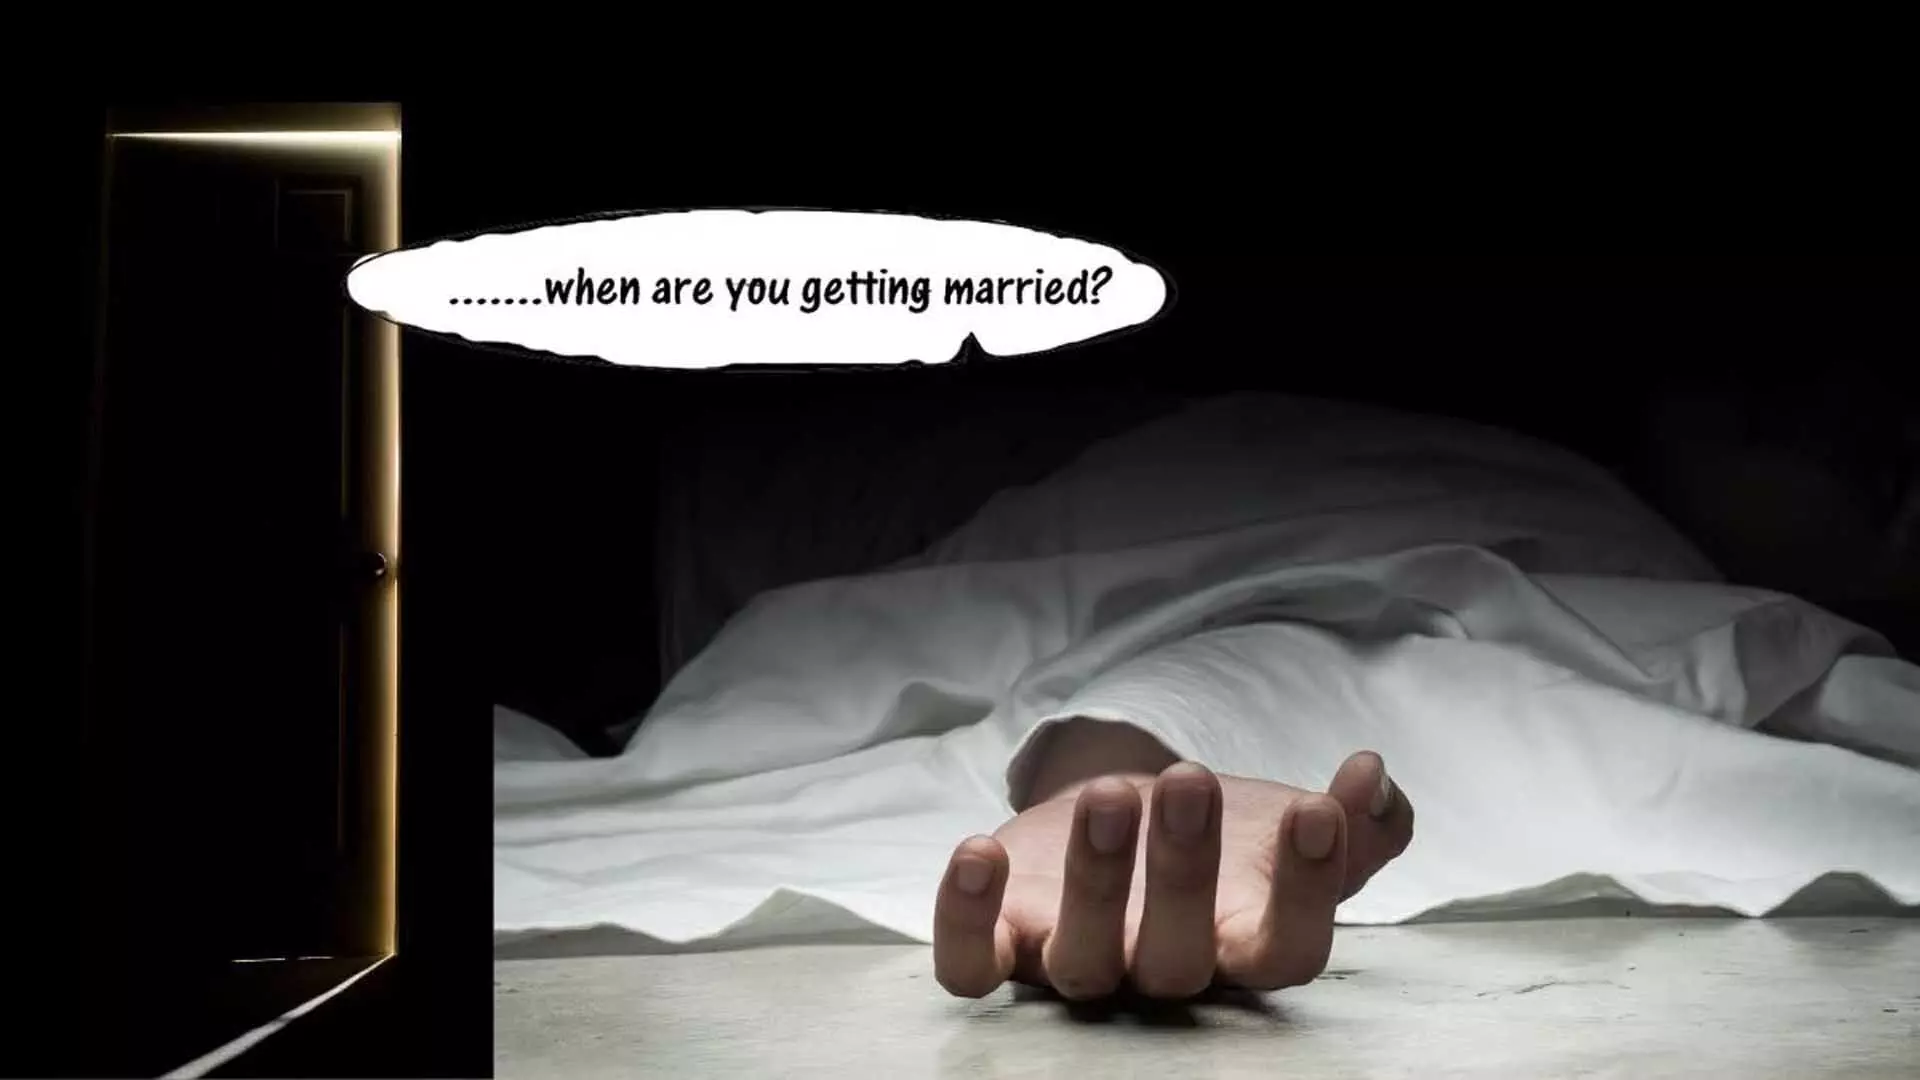 शादी कब करोगे, पड़ोसी के सवाल से तंग आकर शख्स ने कर दिया MURDER